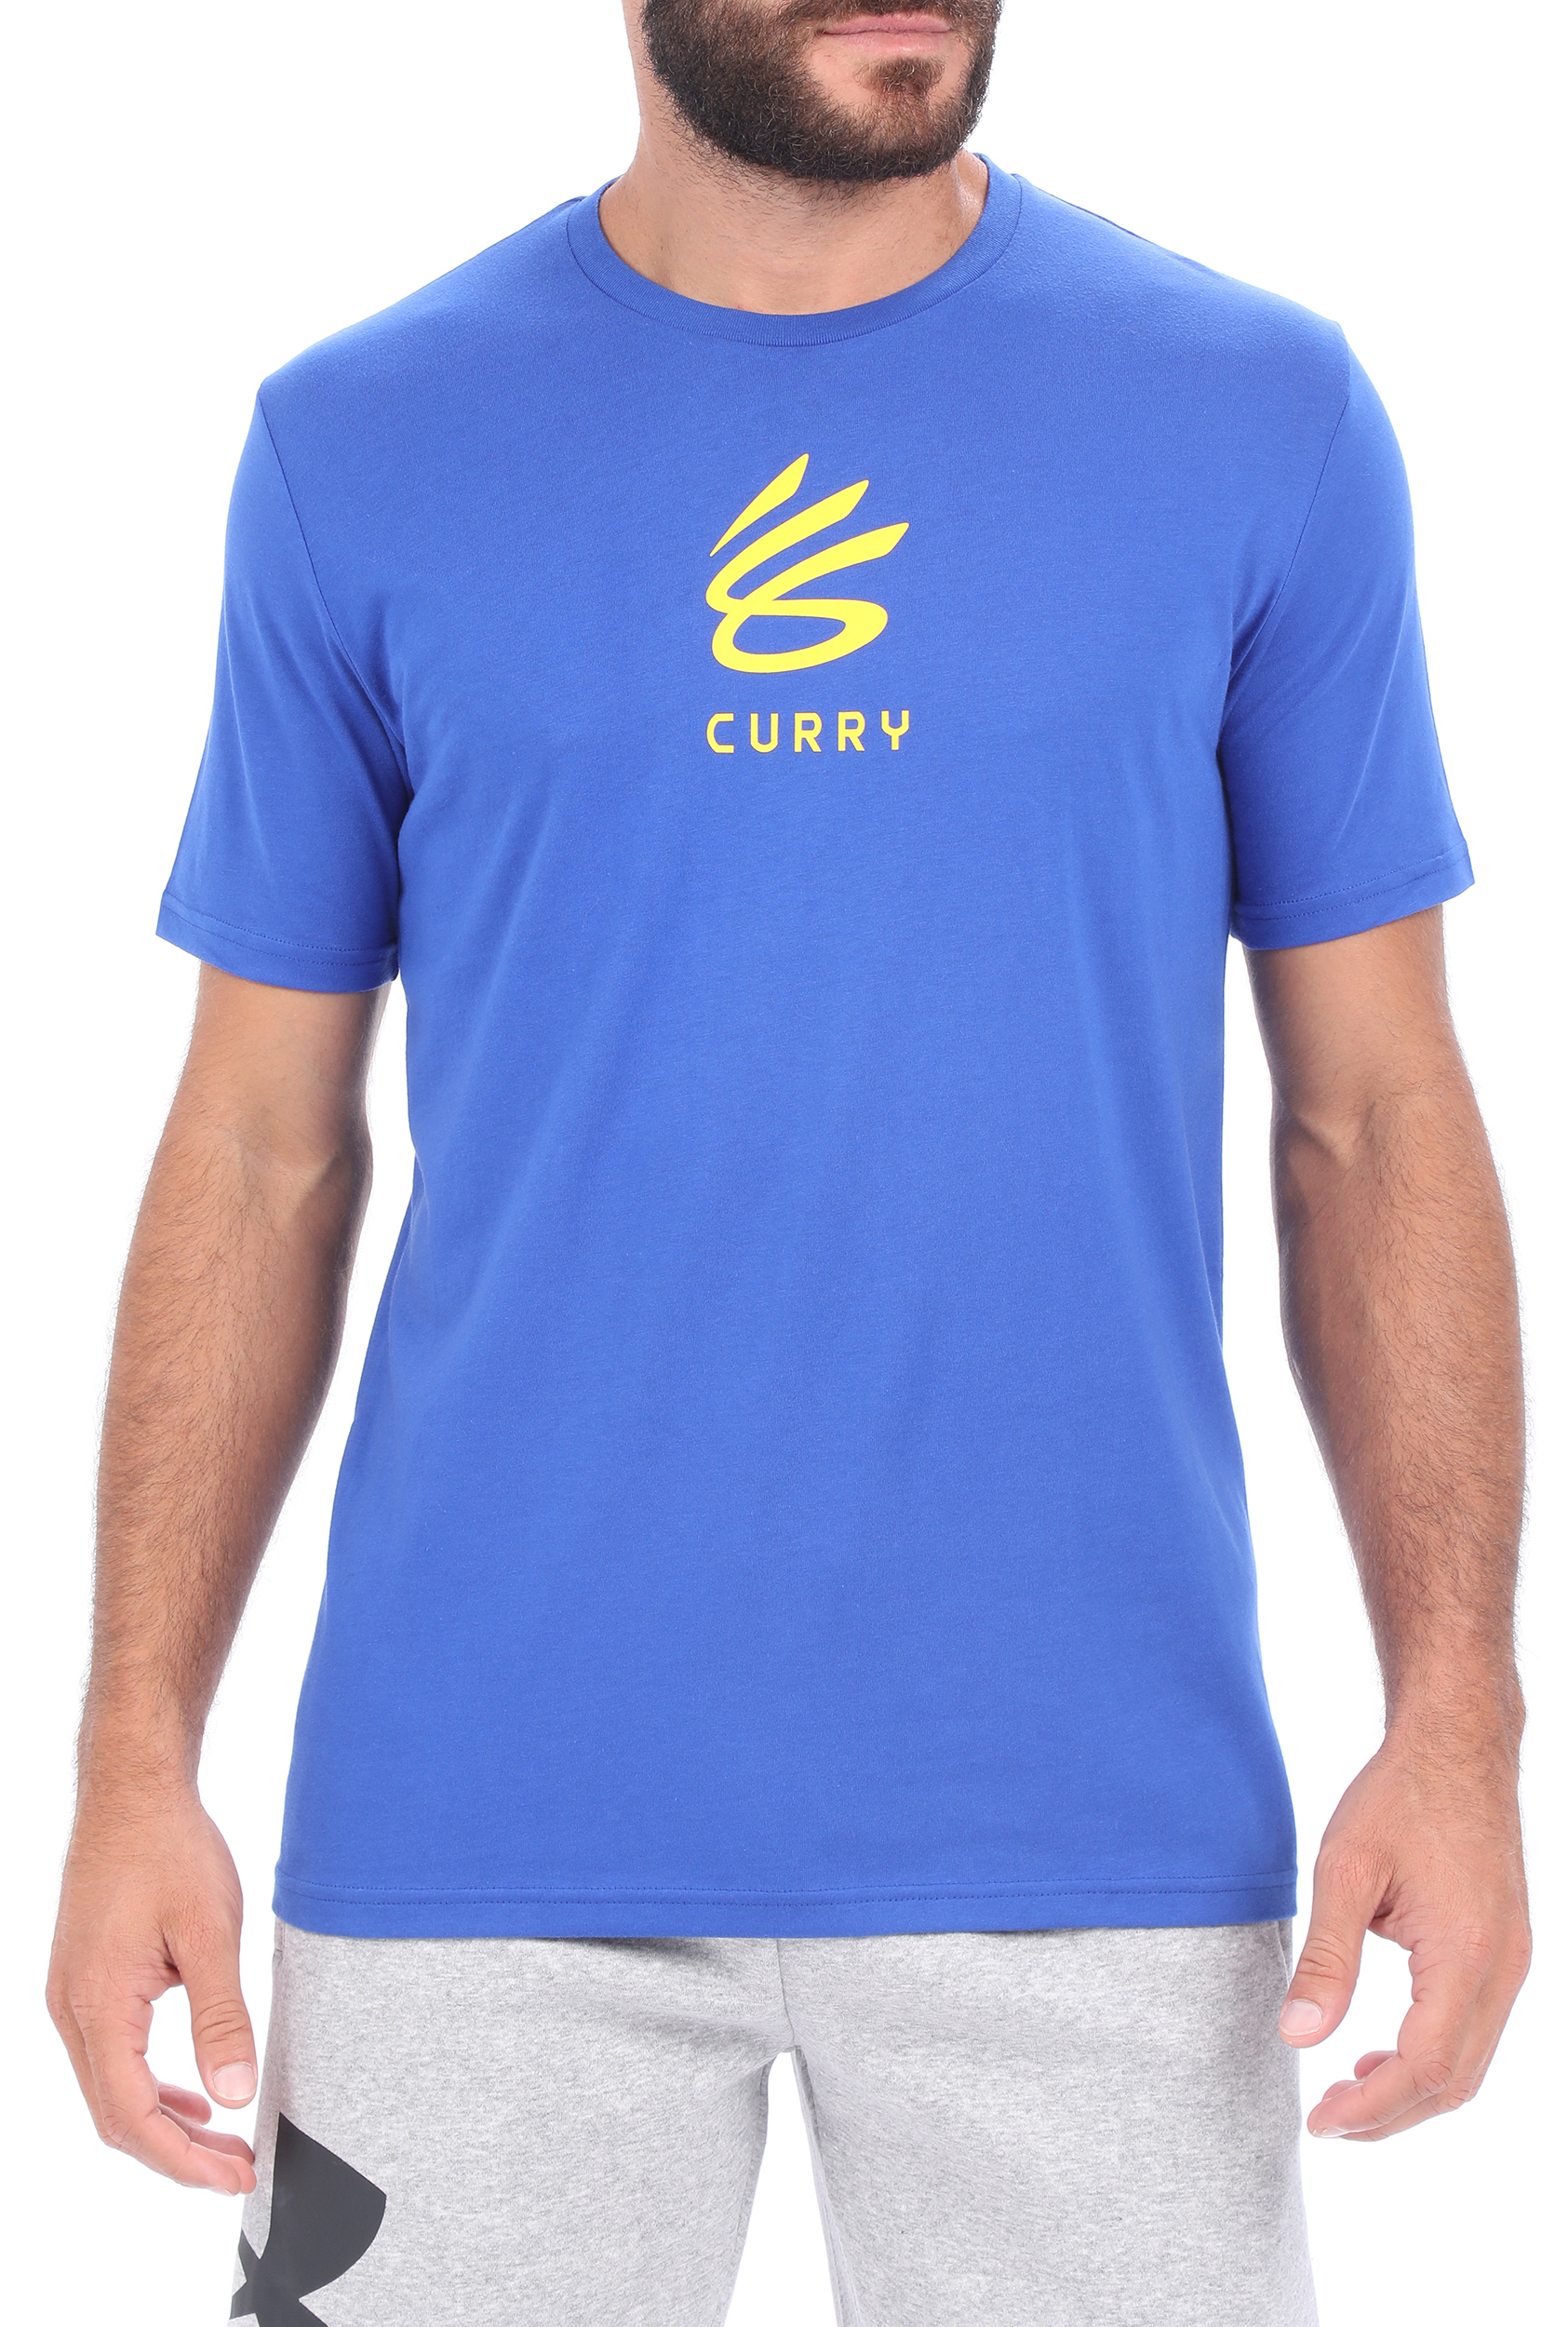 Ανδρικά/Ρούχα/Μπλούζες/Κοντομάνικες UNDER ARMOUR - Ανδρικό t-shirt UNDER ARMOUR CURRY UNDRTD SPLASH μπλε